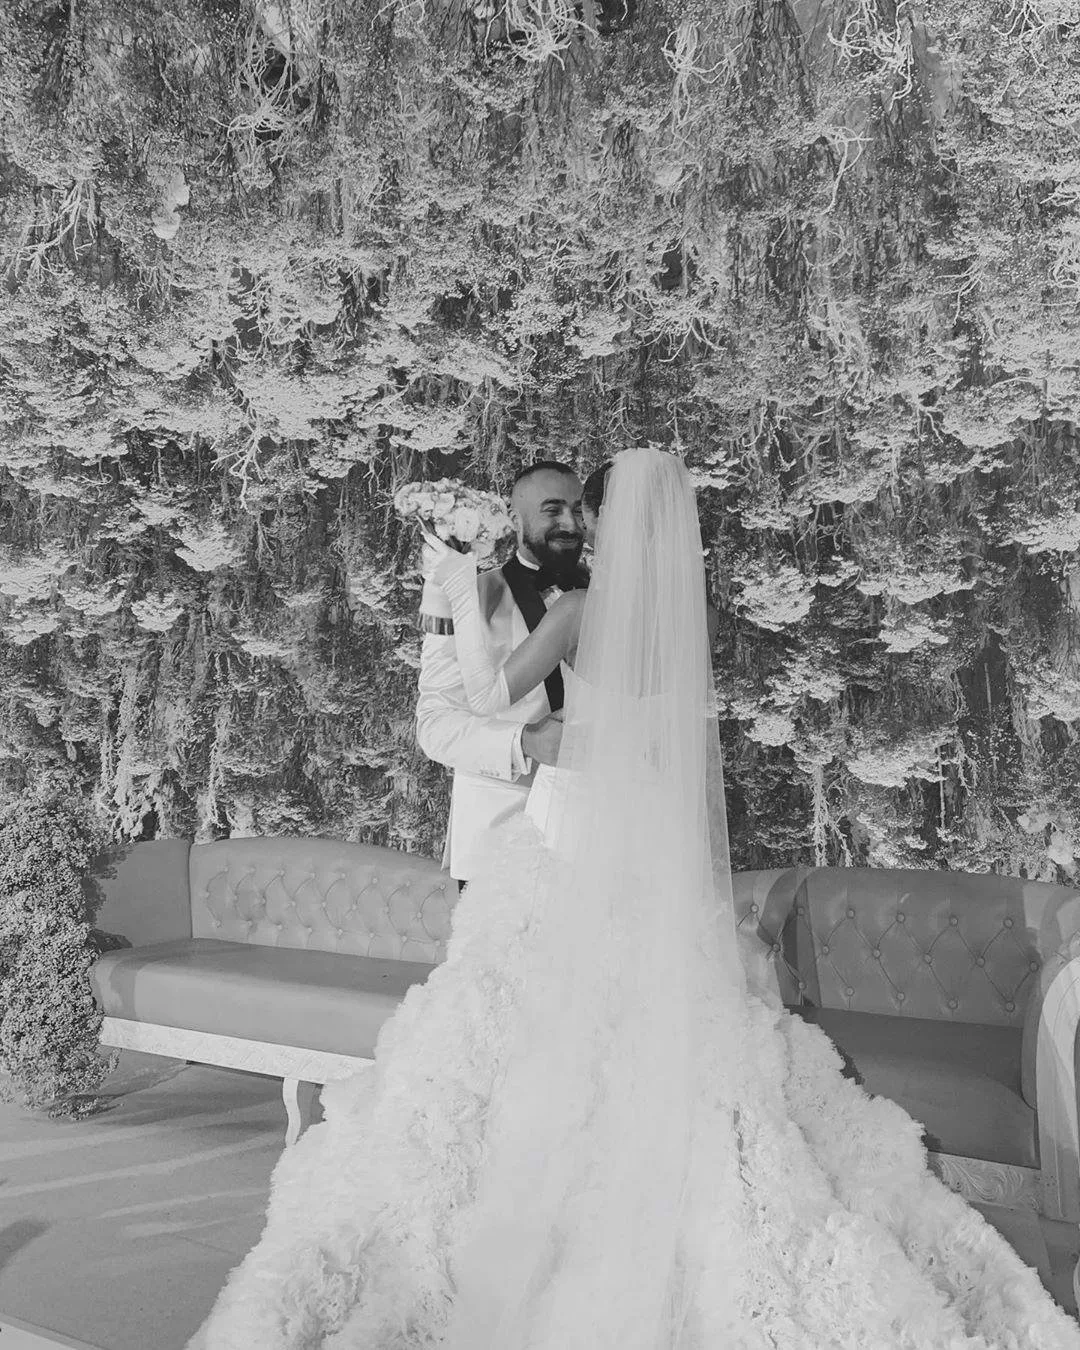 بالصور والفيديو، إطلالتان مختلفتان للفاشينيستا رانيا فواز في حفل زفافها